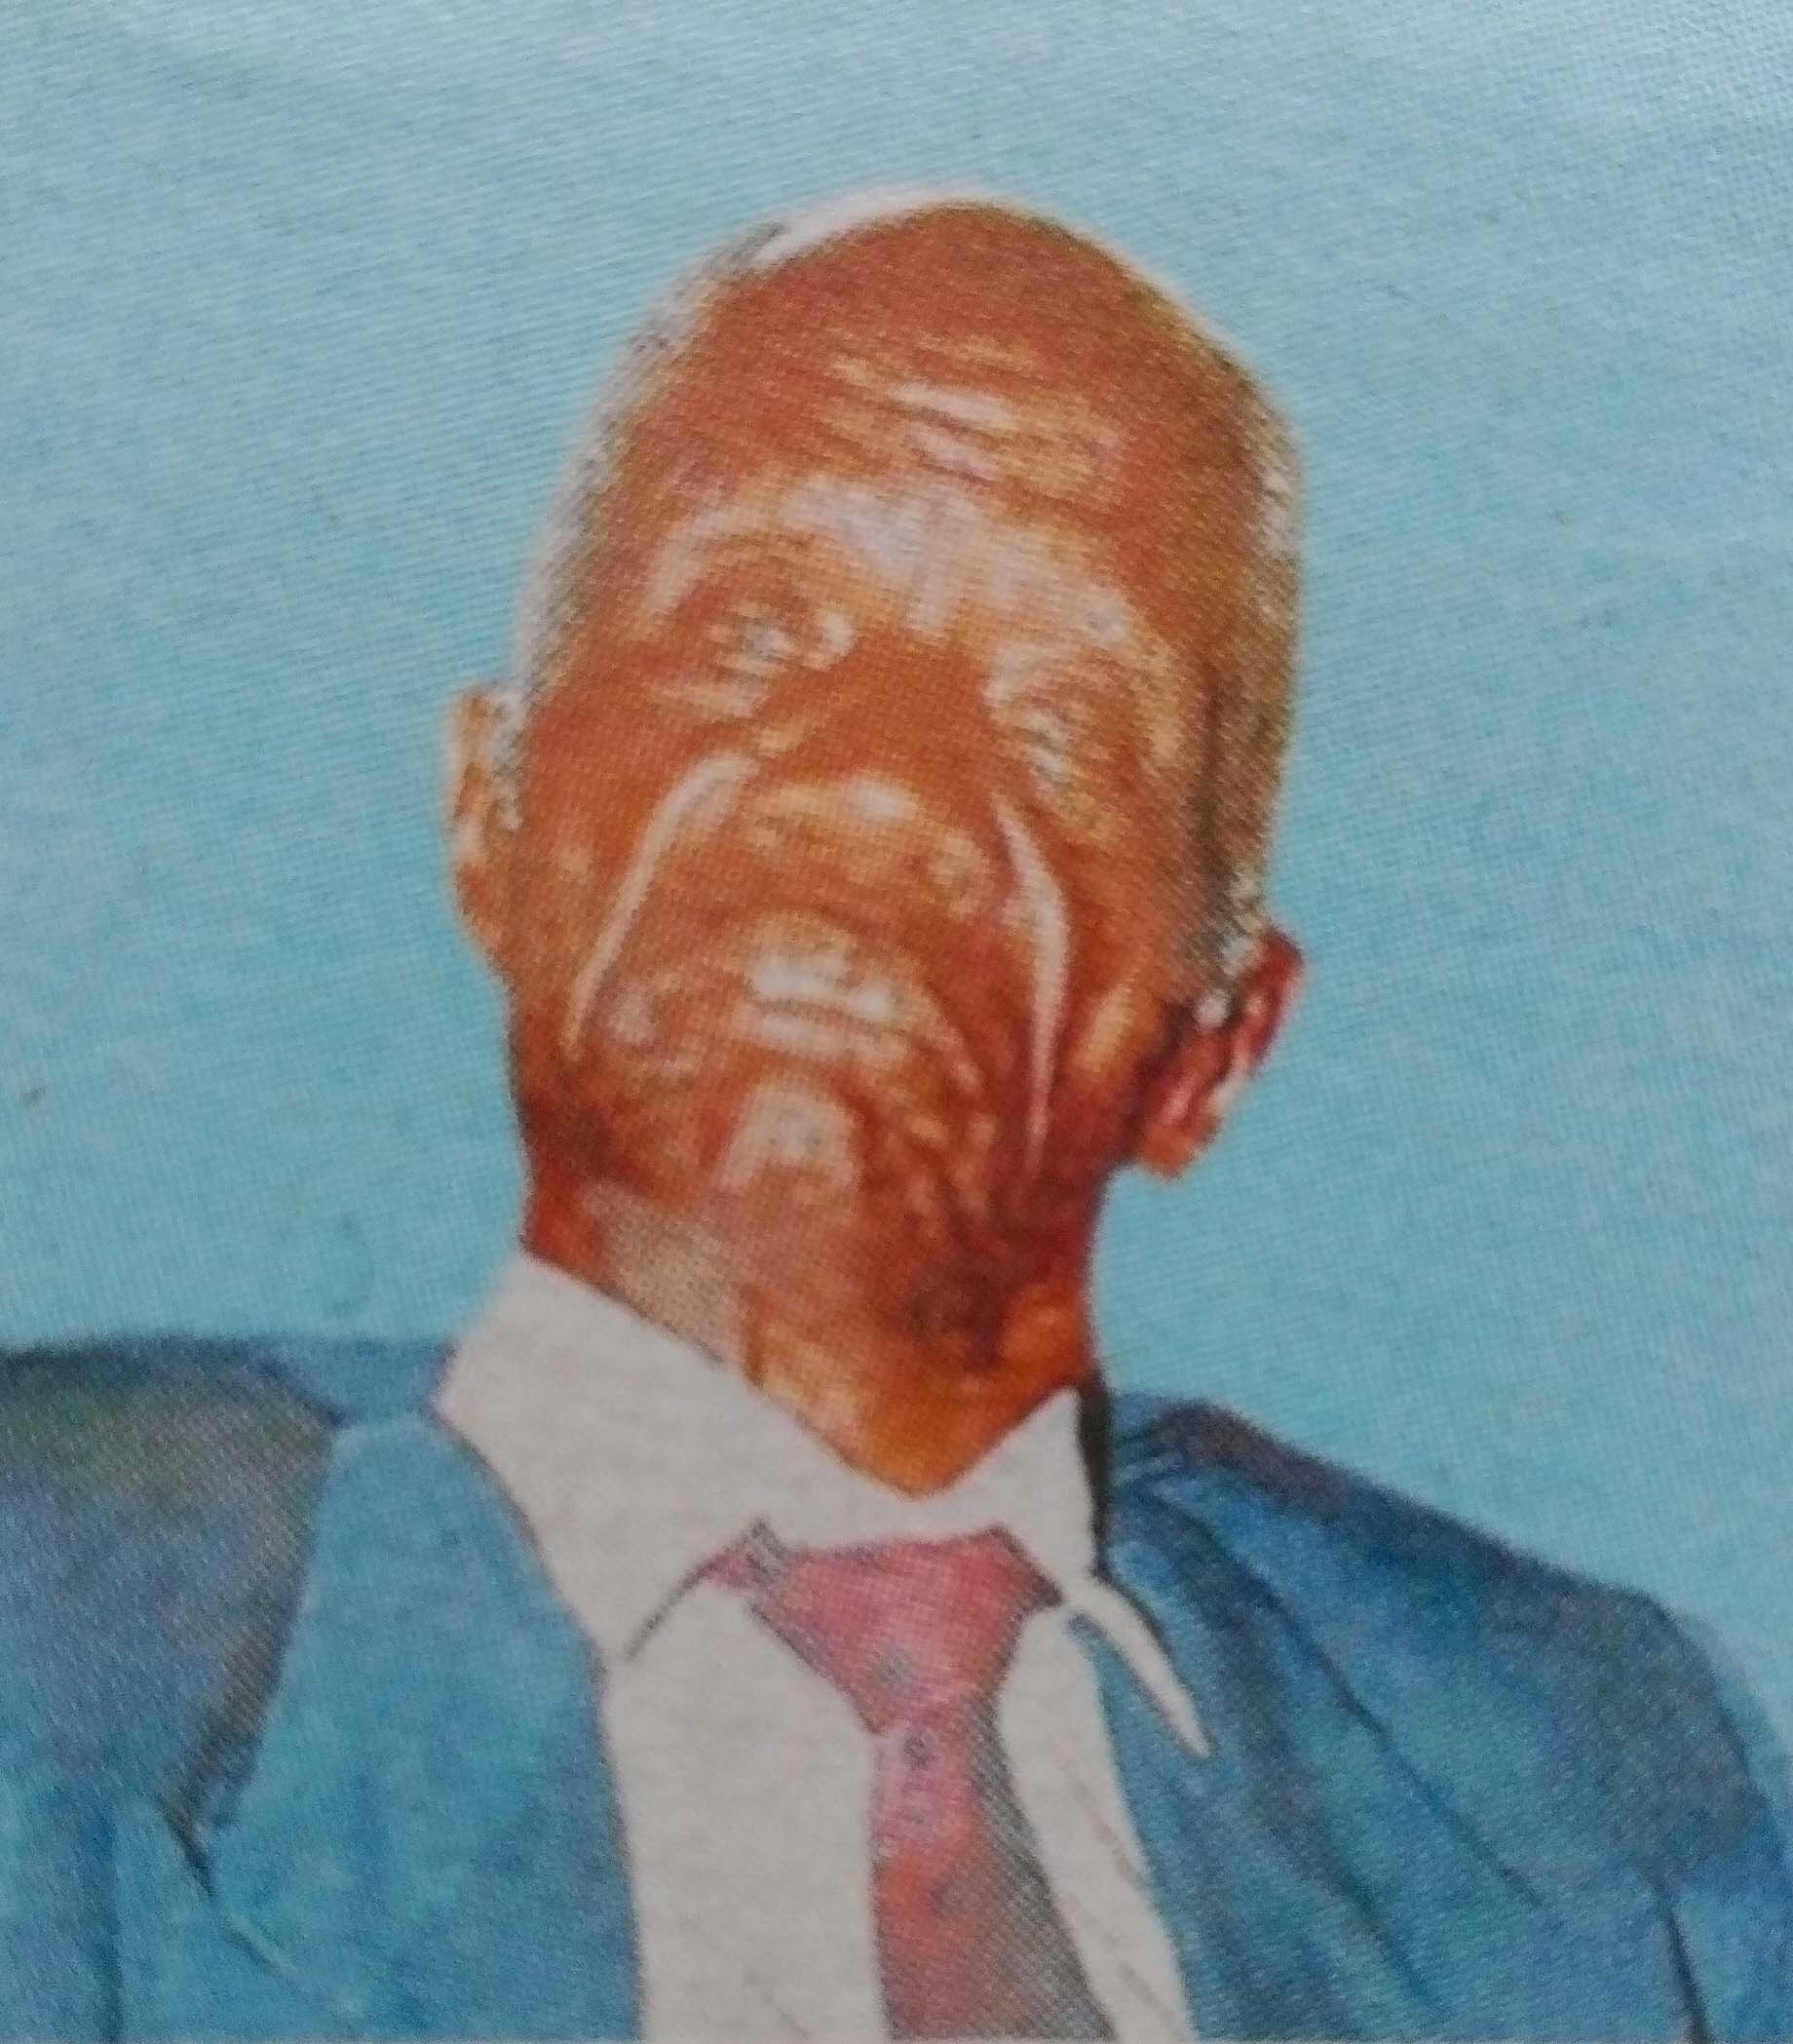 Obituary Image of Mzee Ibrahim Nyambok Ogut